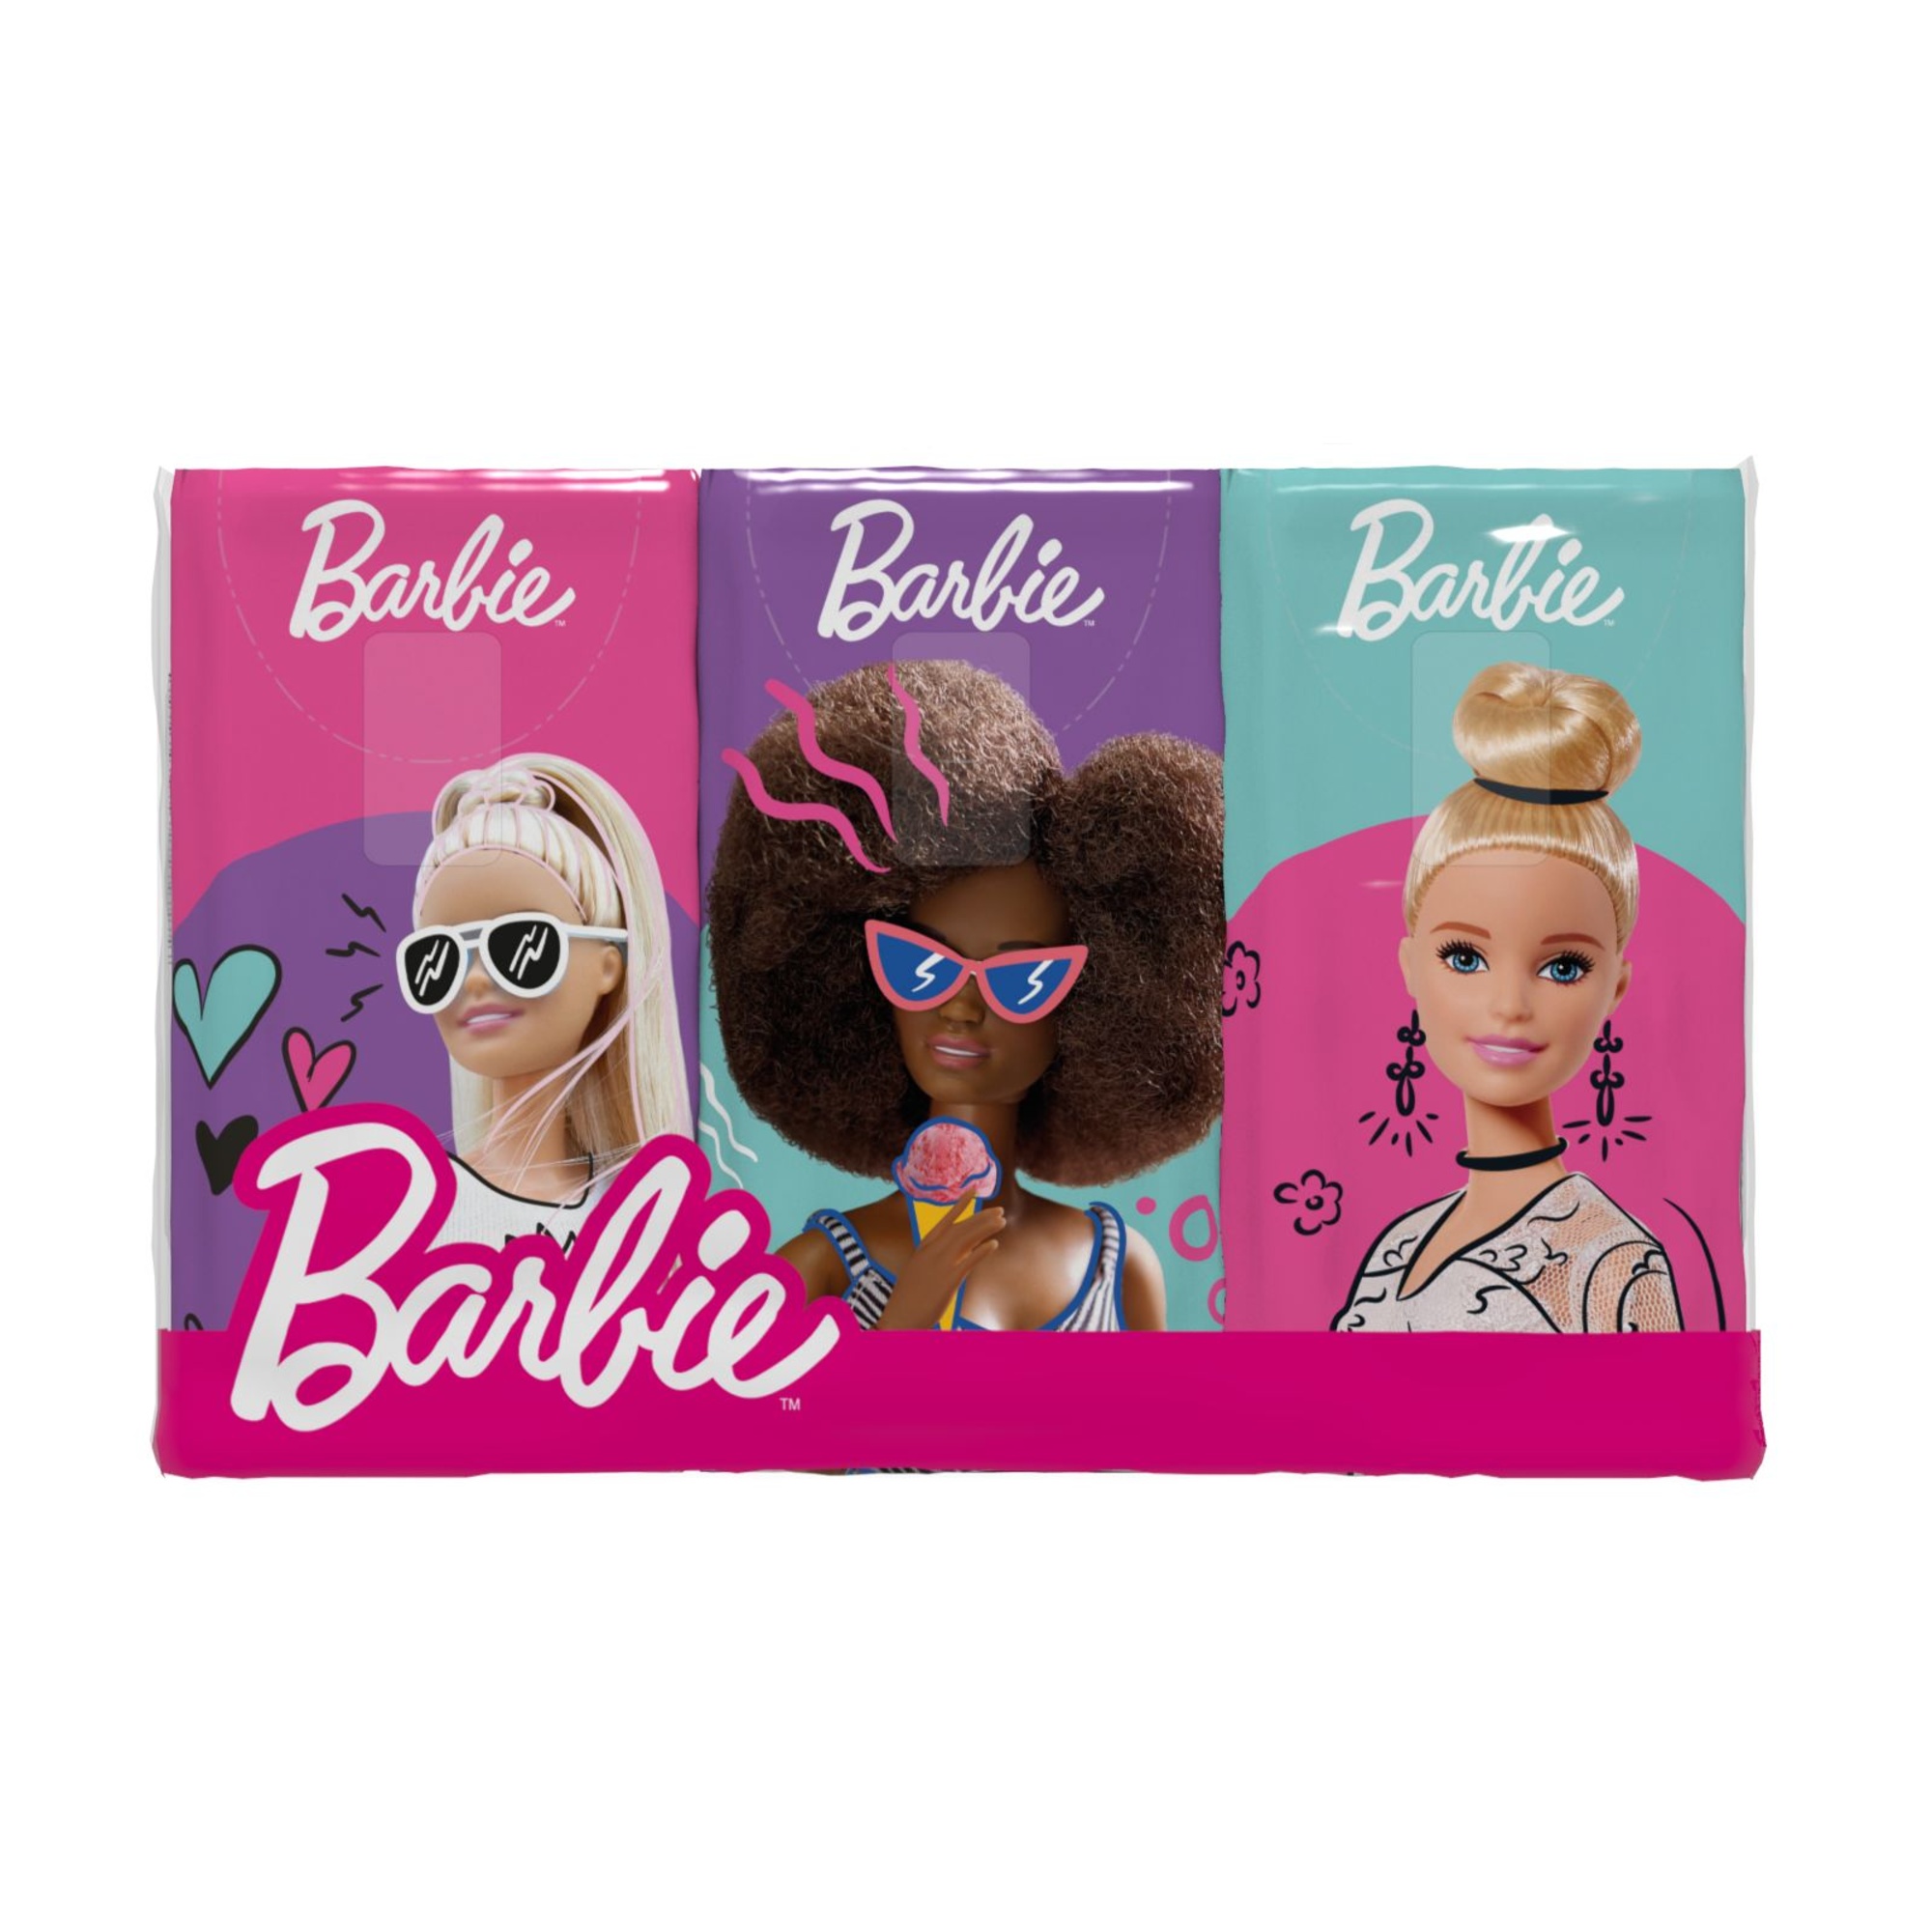 Clean paper fazzoletti barbie 6pack vaniglia - Clean Paper